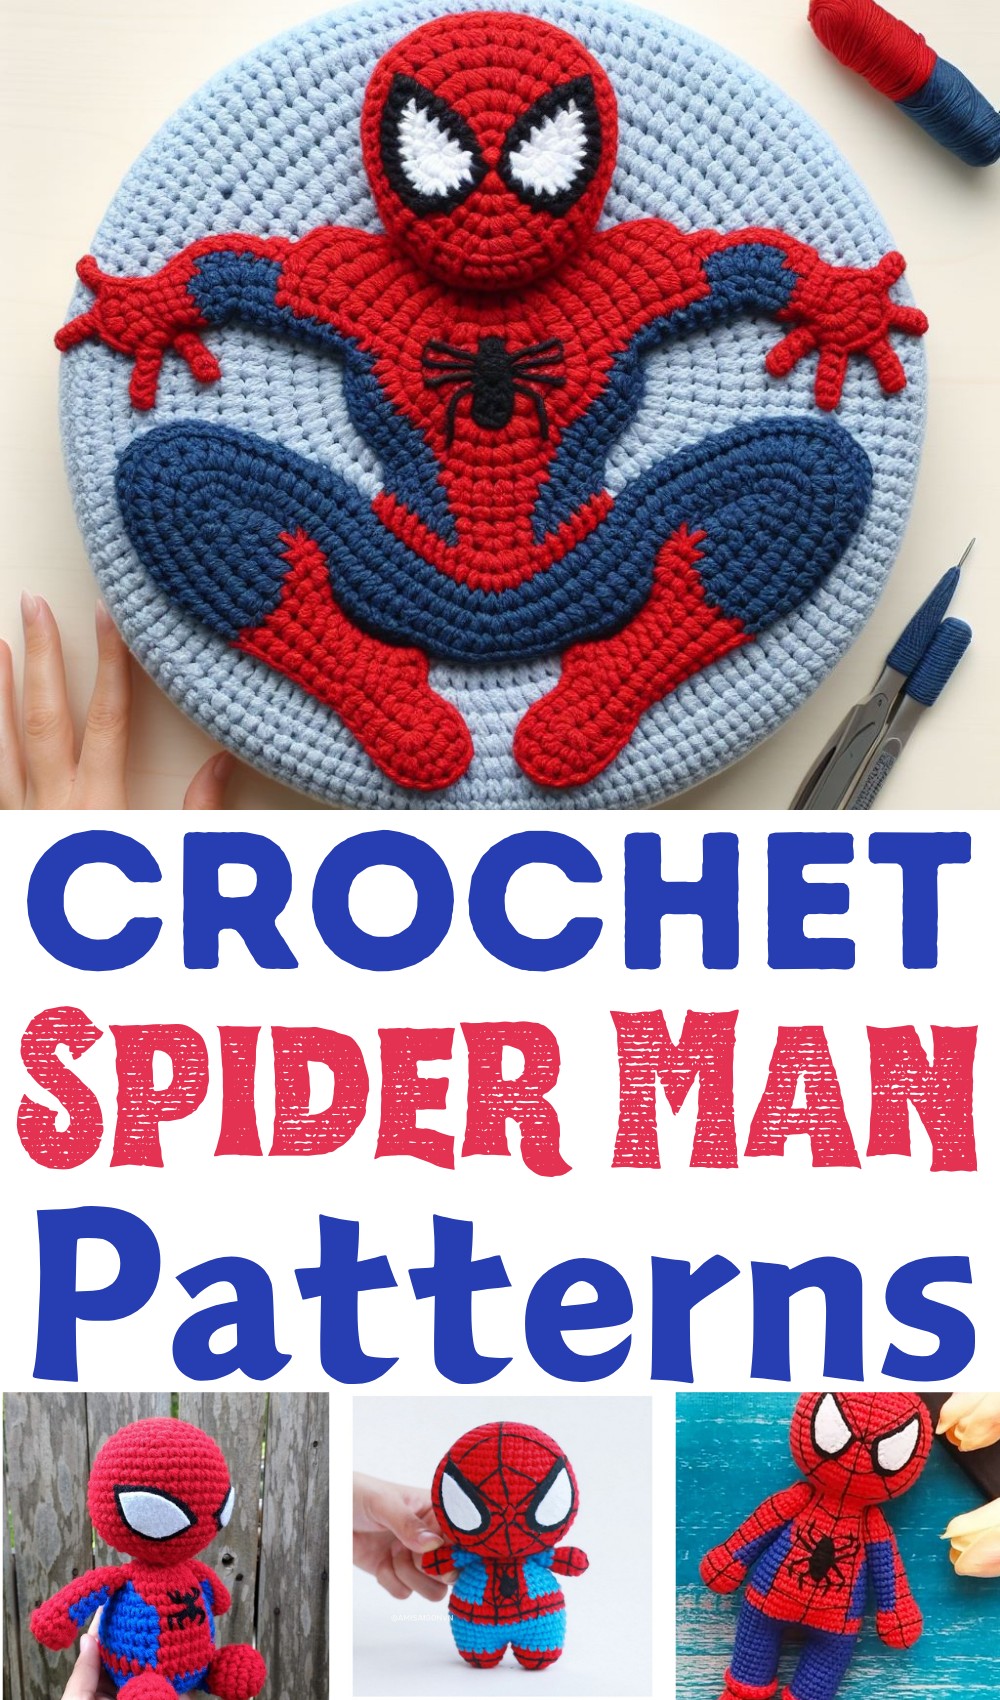 10 Crochet Spider Man Patterns